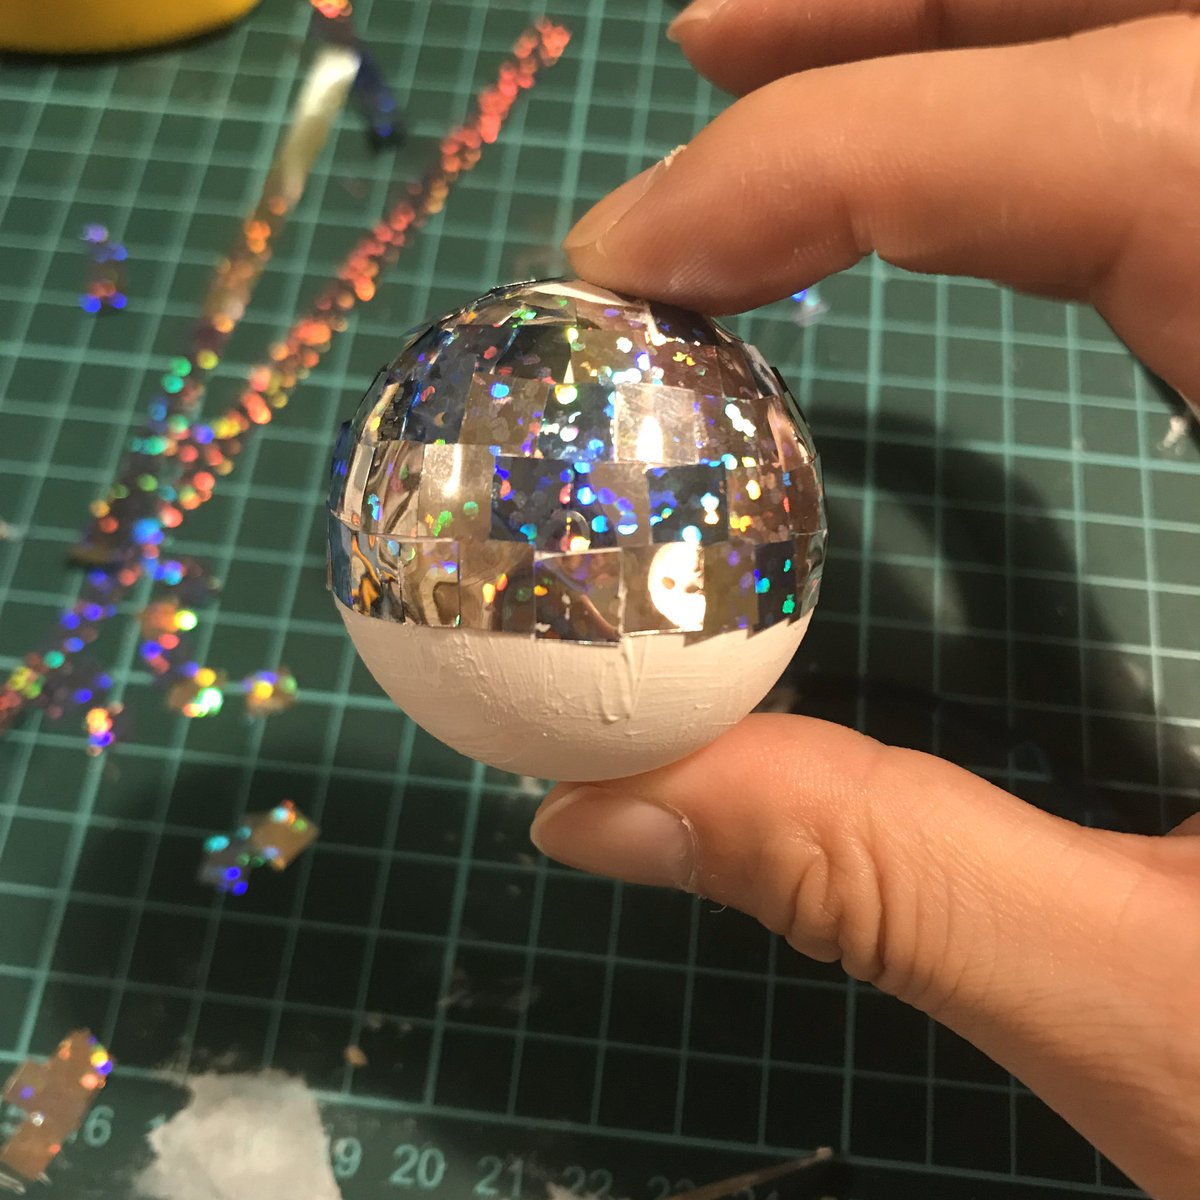 えむたろう 今回の写真のためにミラーボール自作しました 作り方は簡単 ピンポン球にホログラムの紙を切ってボンドで貼っていくだけです 隙間からピンポン球のオレンジ色が見えないように白のアクリル絵具で下地を作りました 材料は全部百均です